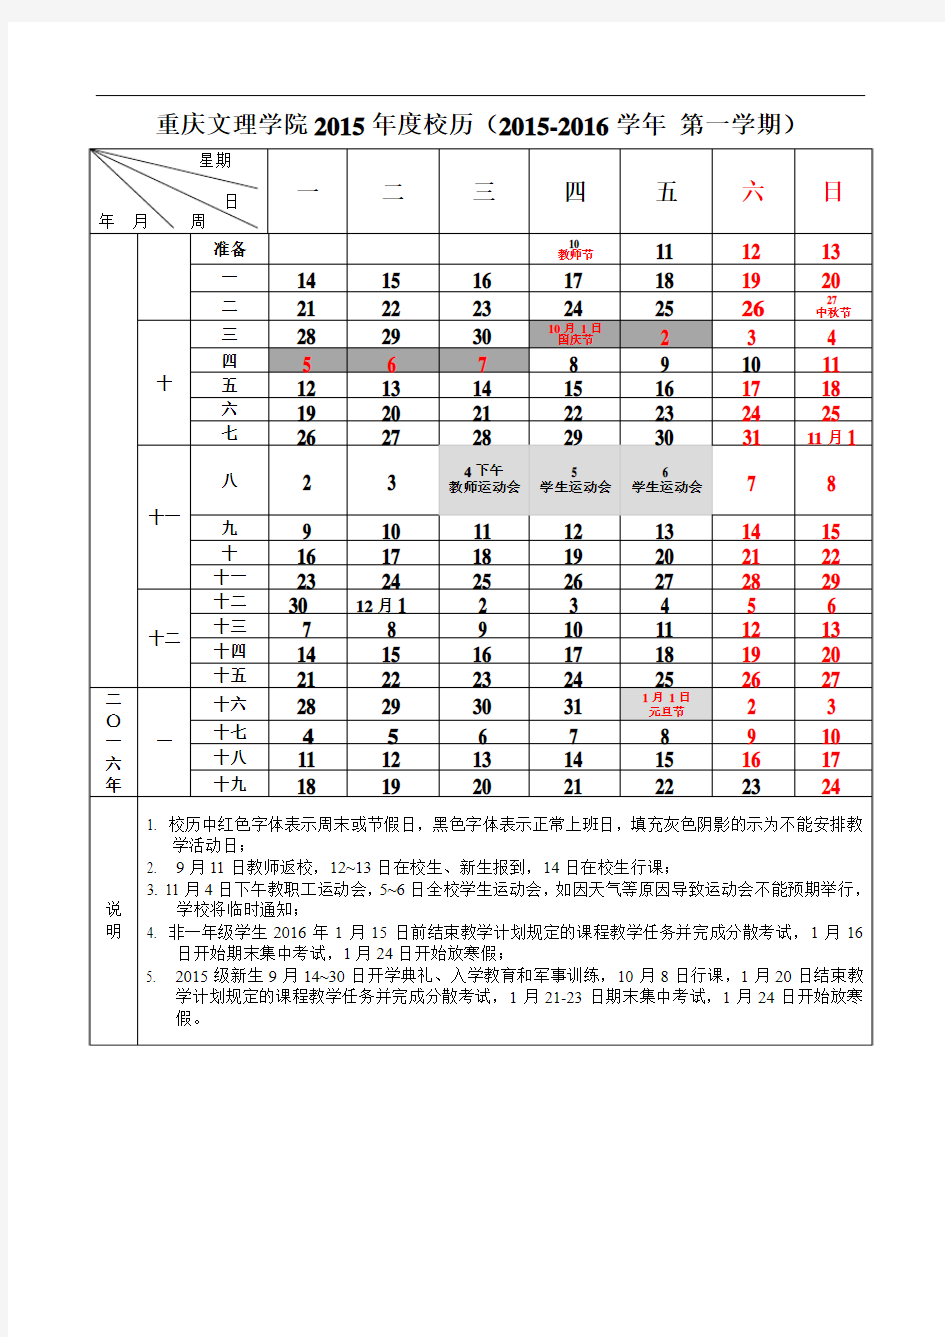 重庆文理学院2015-2016学年第一学期校历